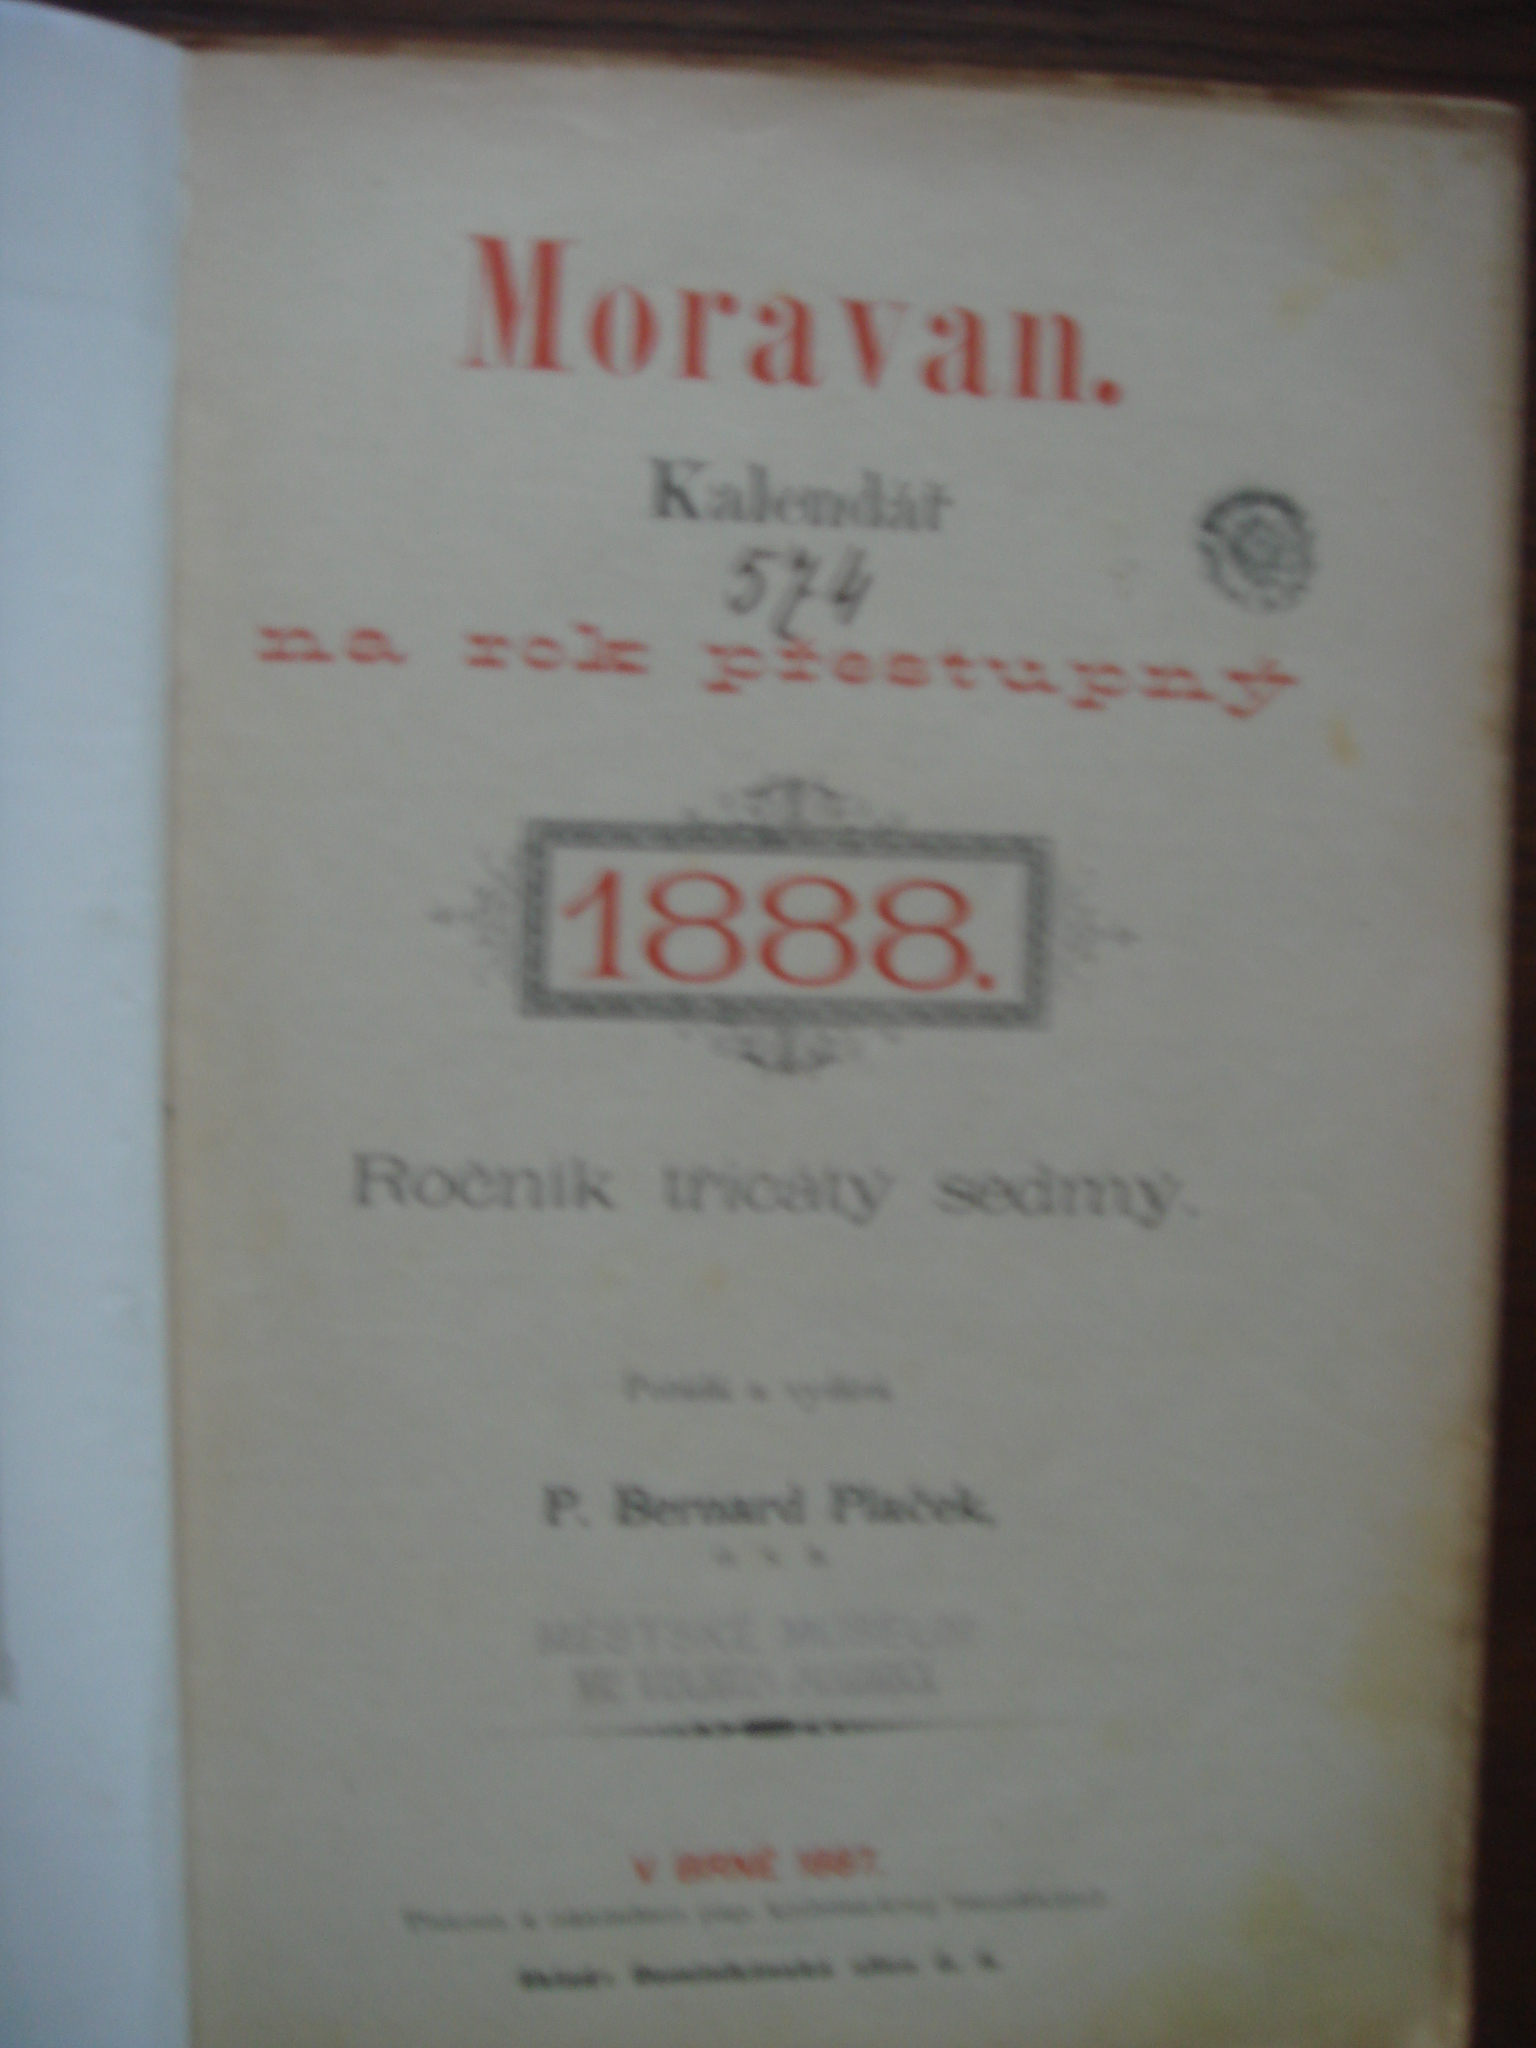 zobrazit detail knihy Moravan - Kalend na rok pestupn 1888